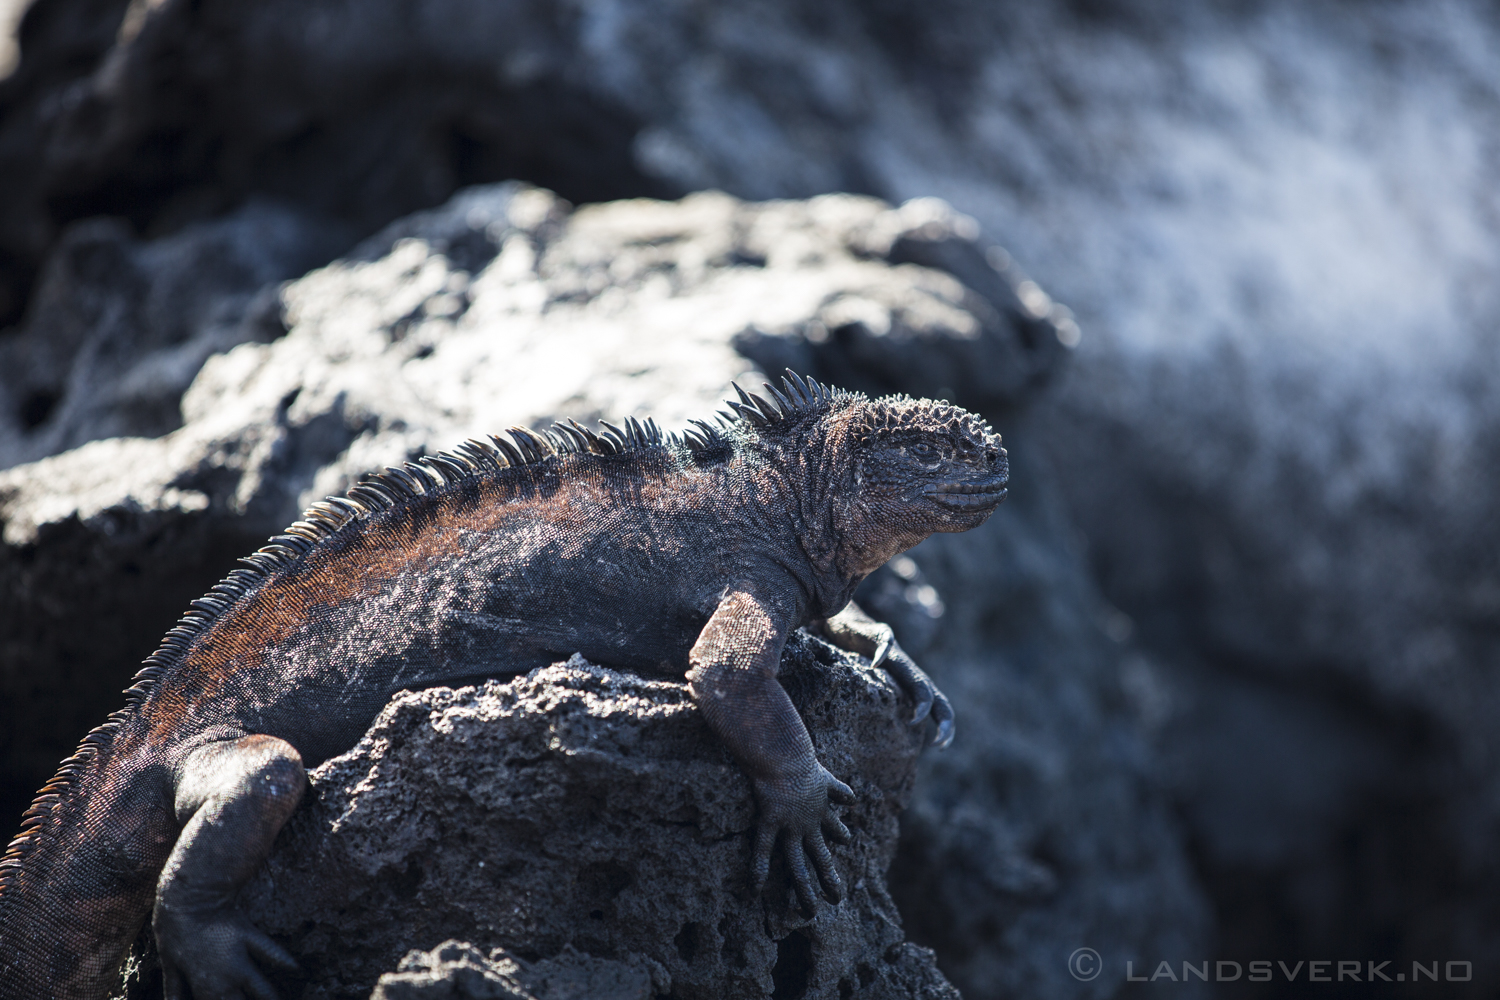 Wild Iguana, Isla Lobos, San Cristobal, Galapagos. 

(Canon EOS 5D Mark III / Canon EF 70-200mm f/2.8 L IS II USM)